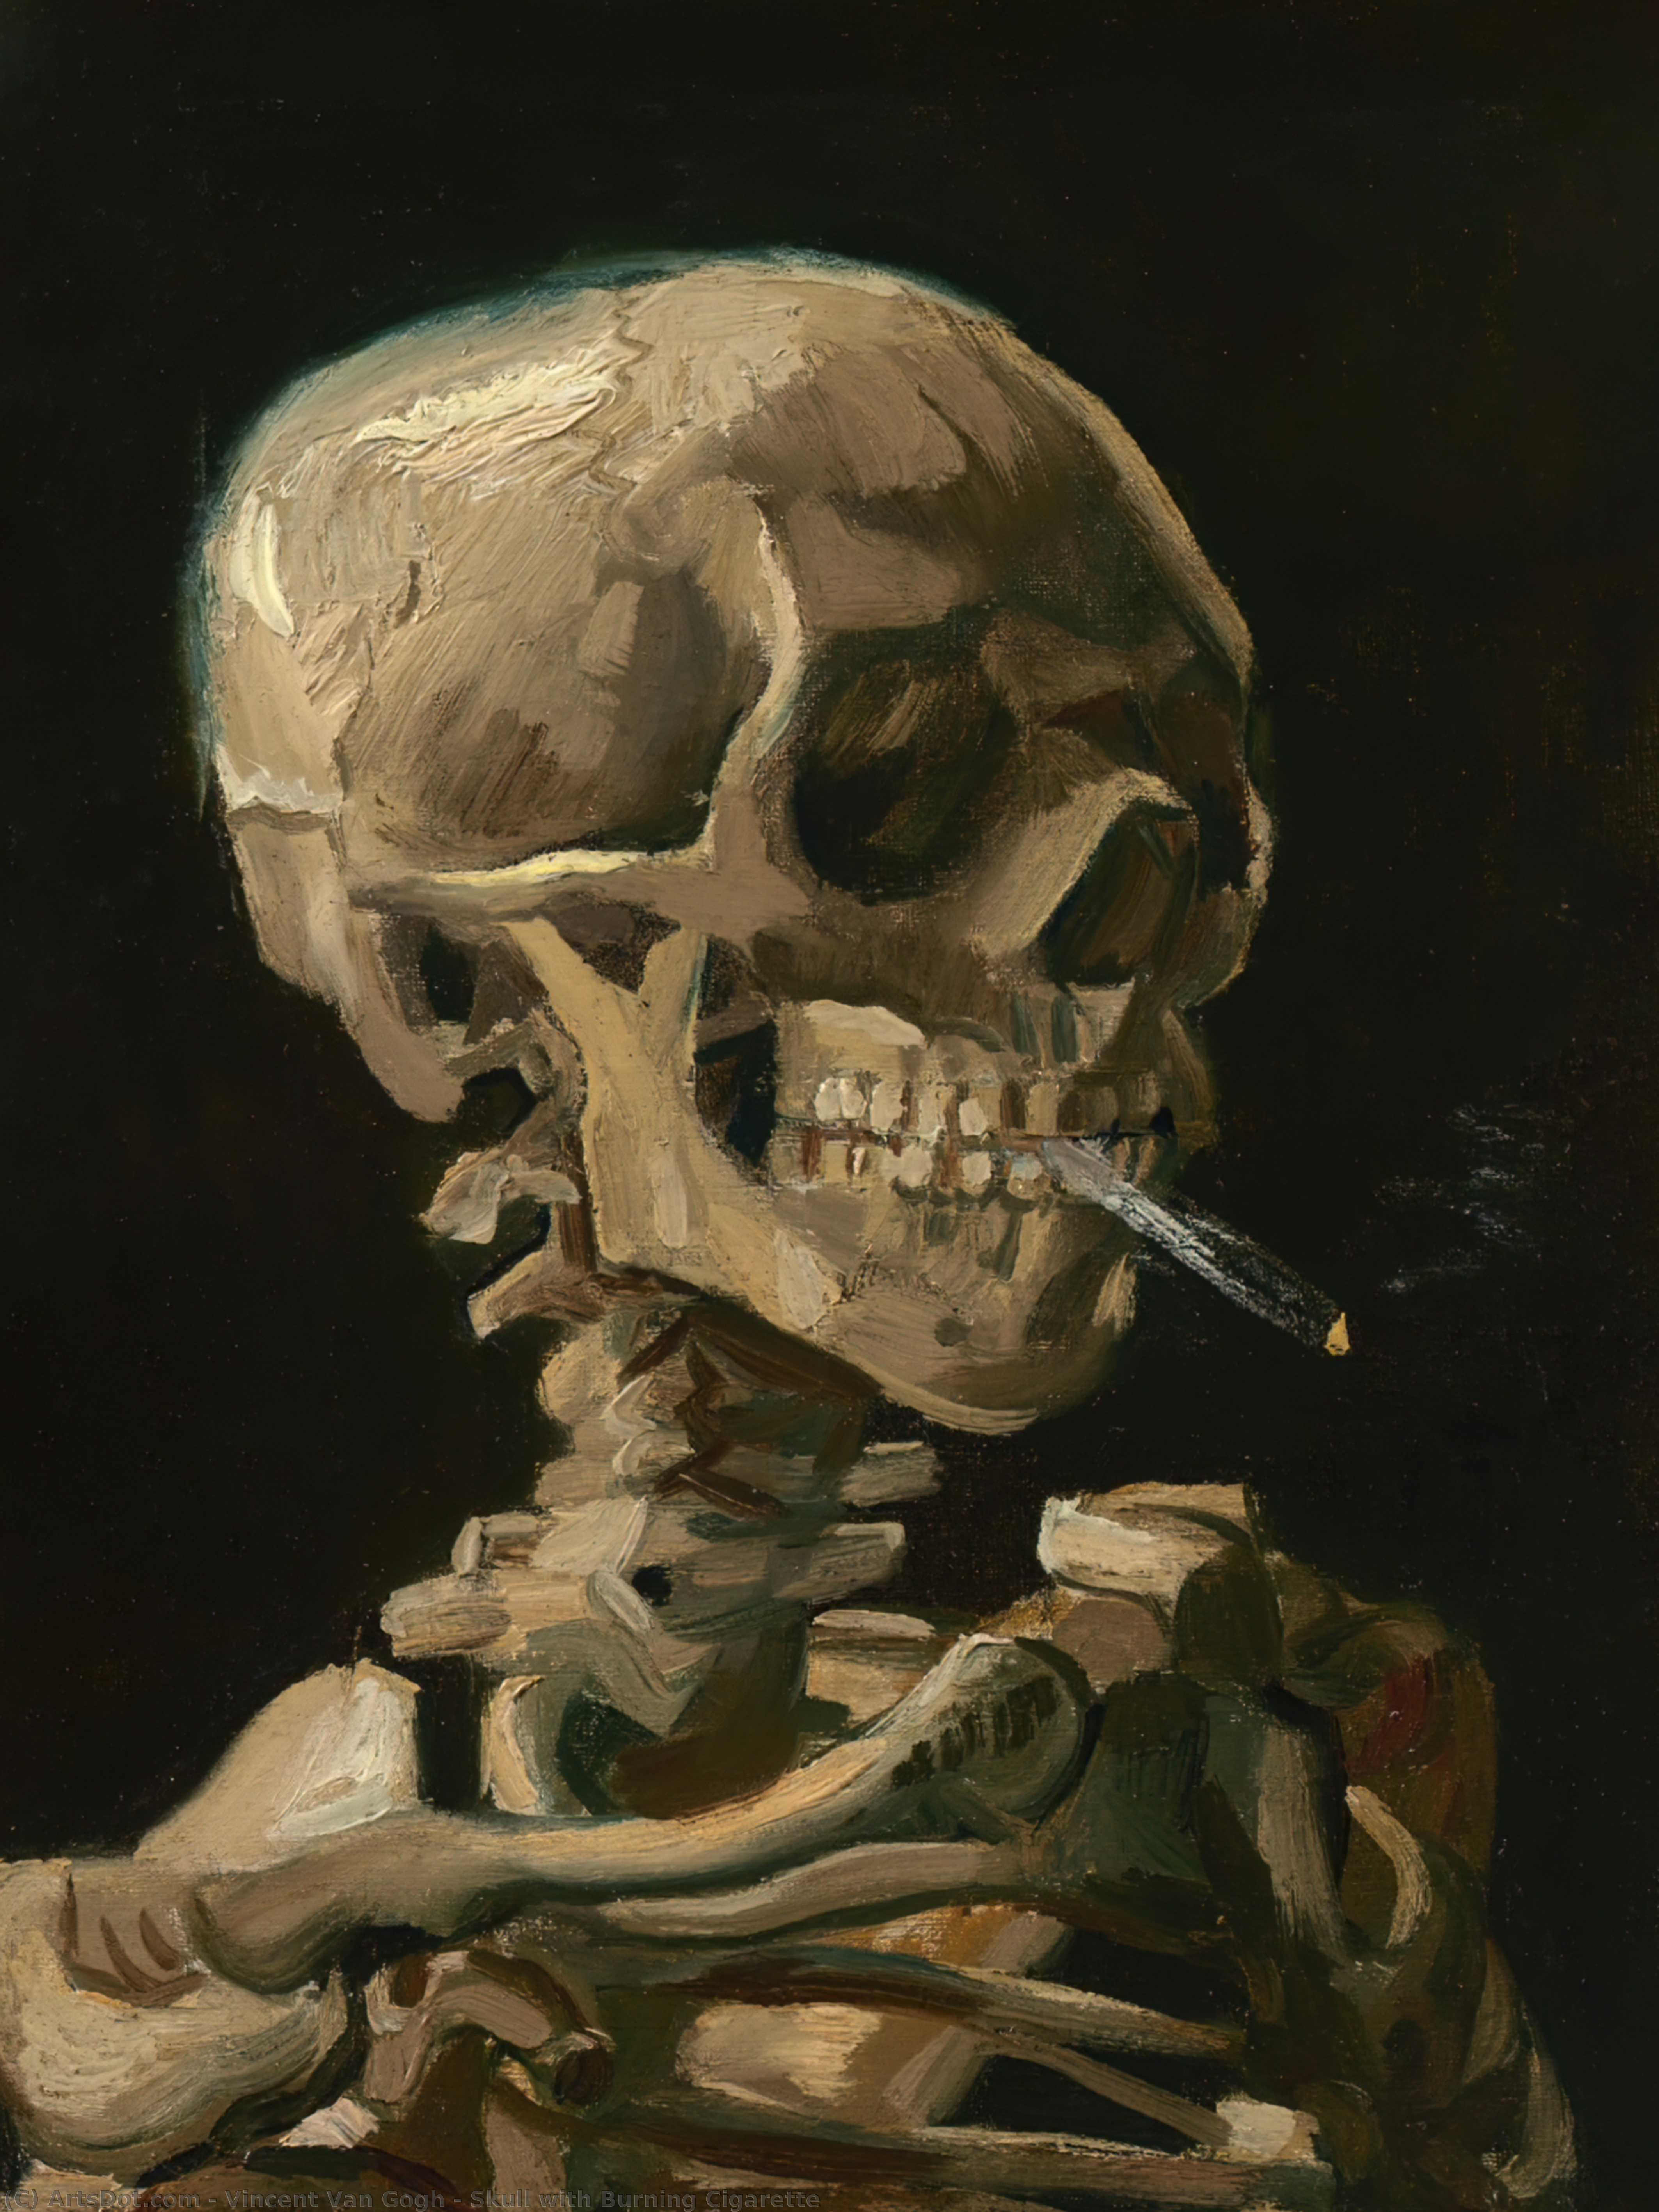 Achat Reproductions De Peintures Crâne avec une cigarette brûlante, 1886 de Vincent Van Gogh (1853-1890, Netherlands) | ArtsDot.com